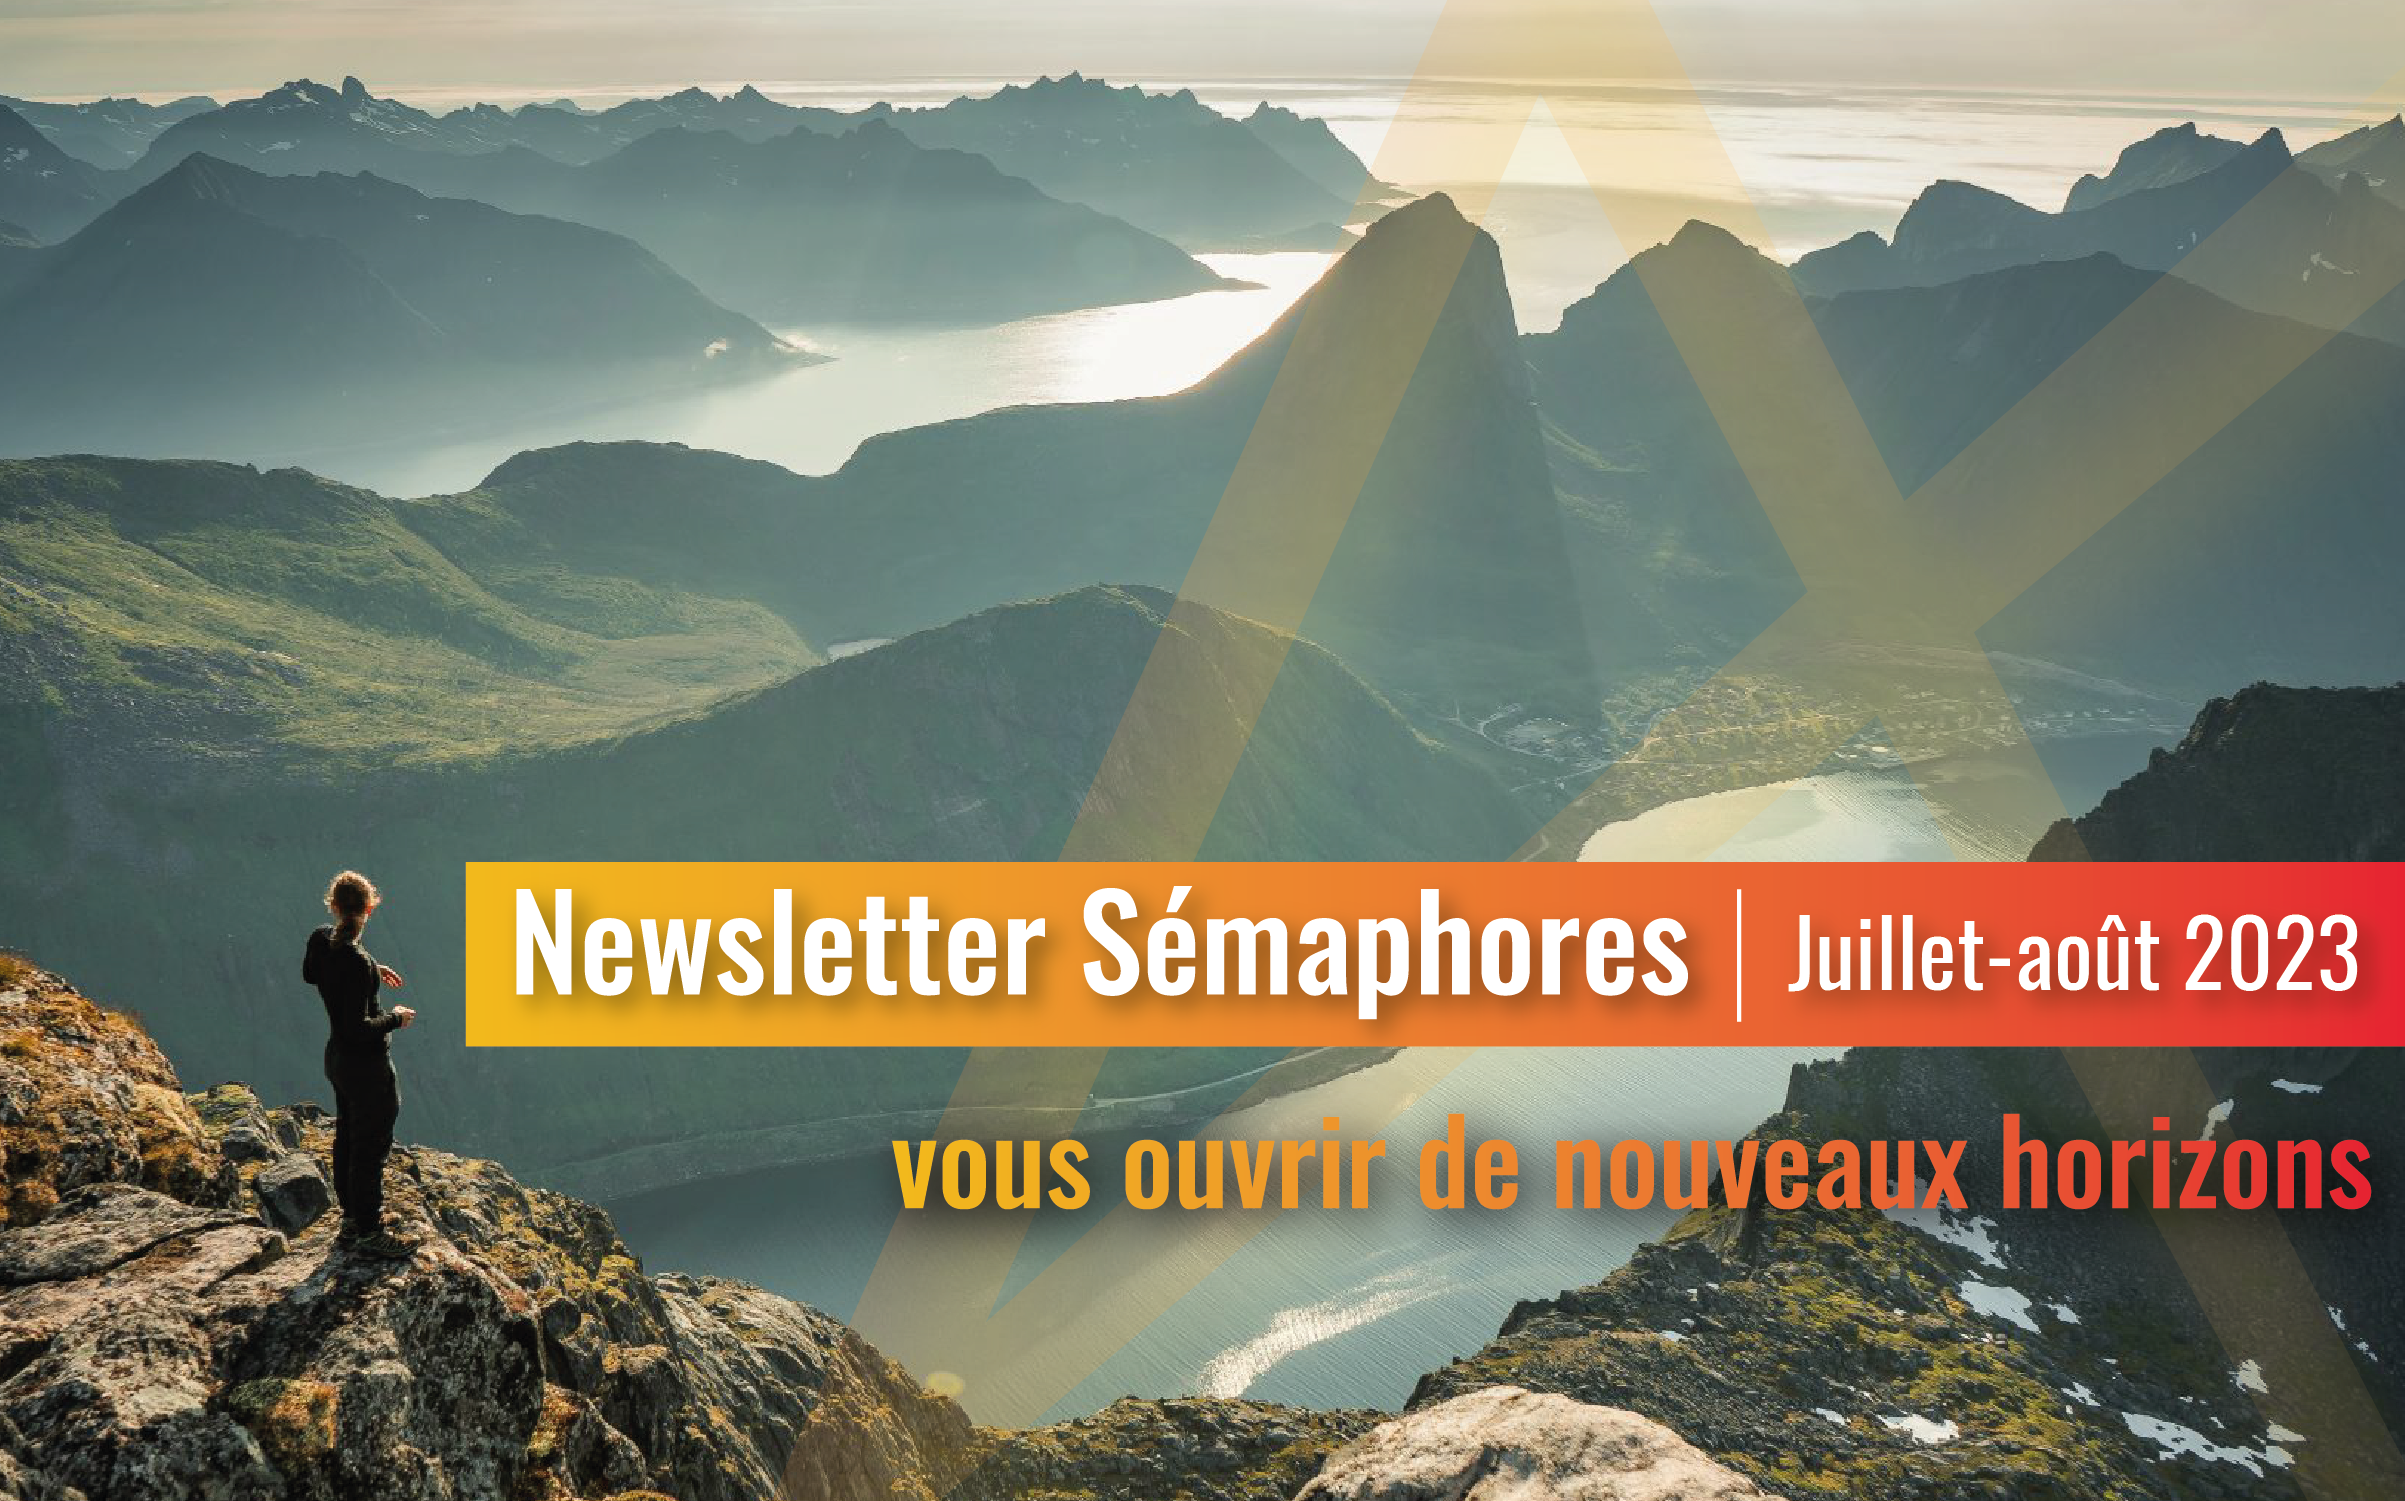 La newsletter Sémaphores - Juillet-août 2023